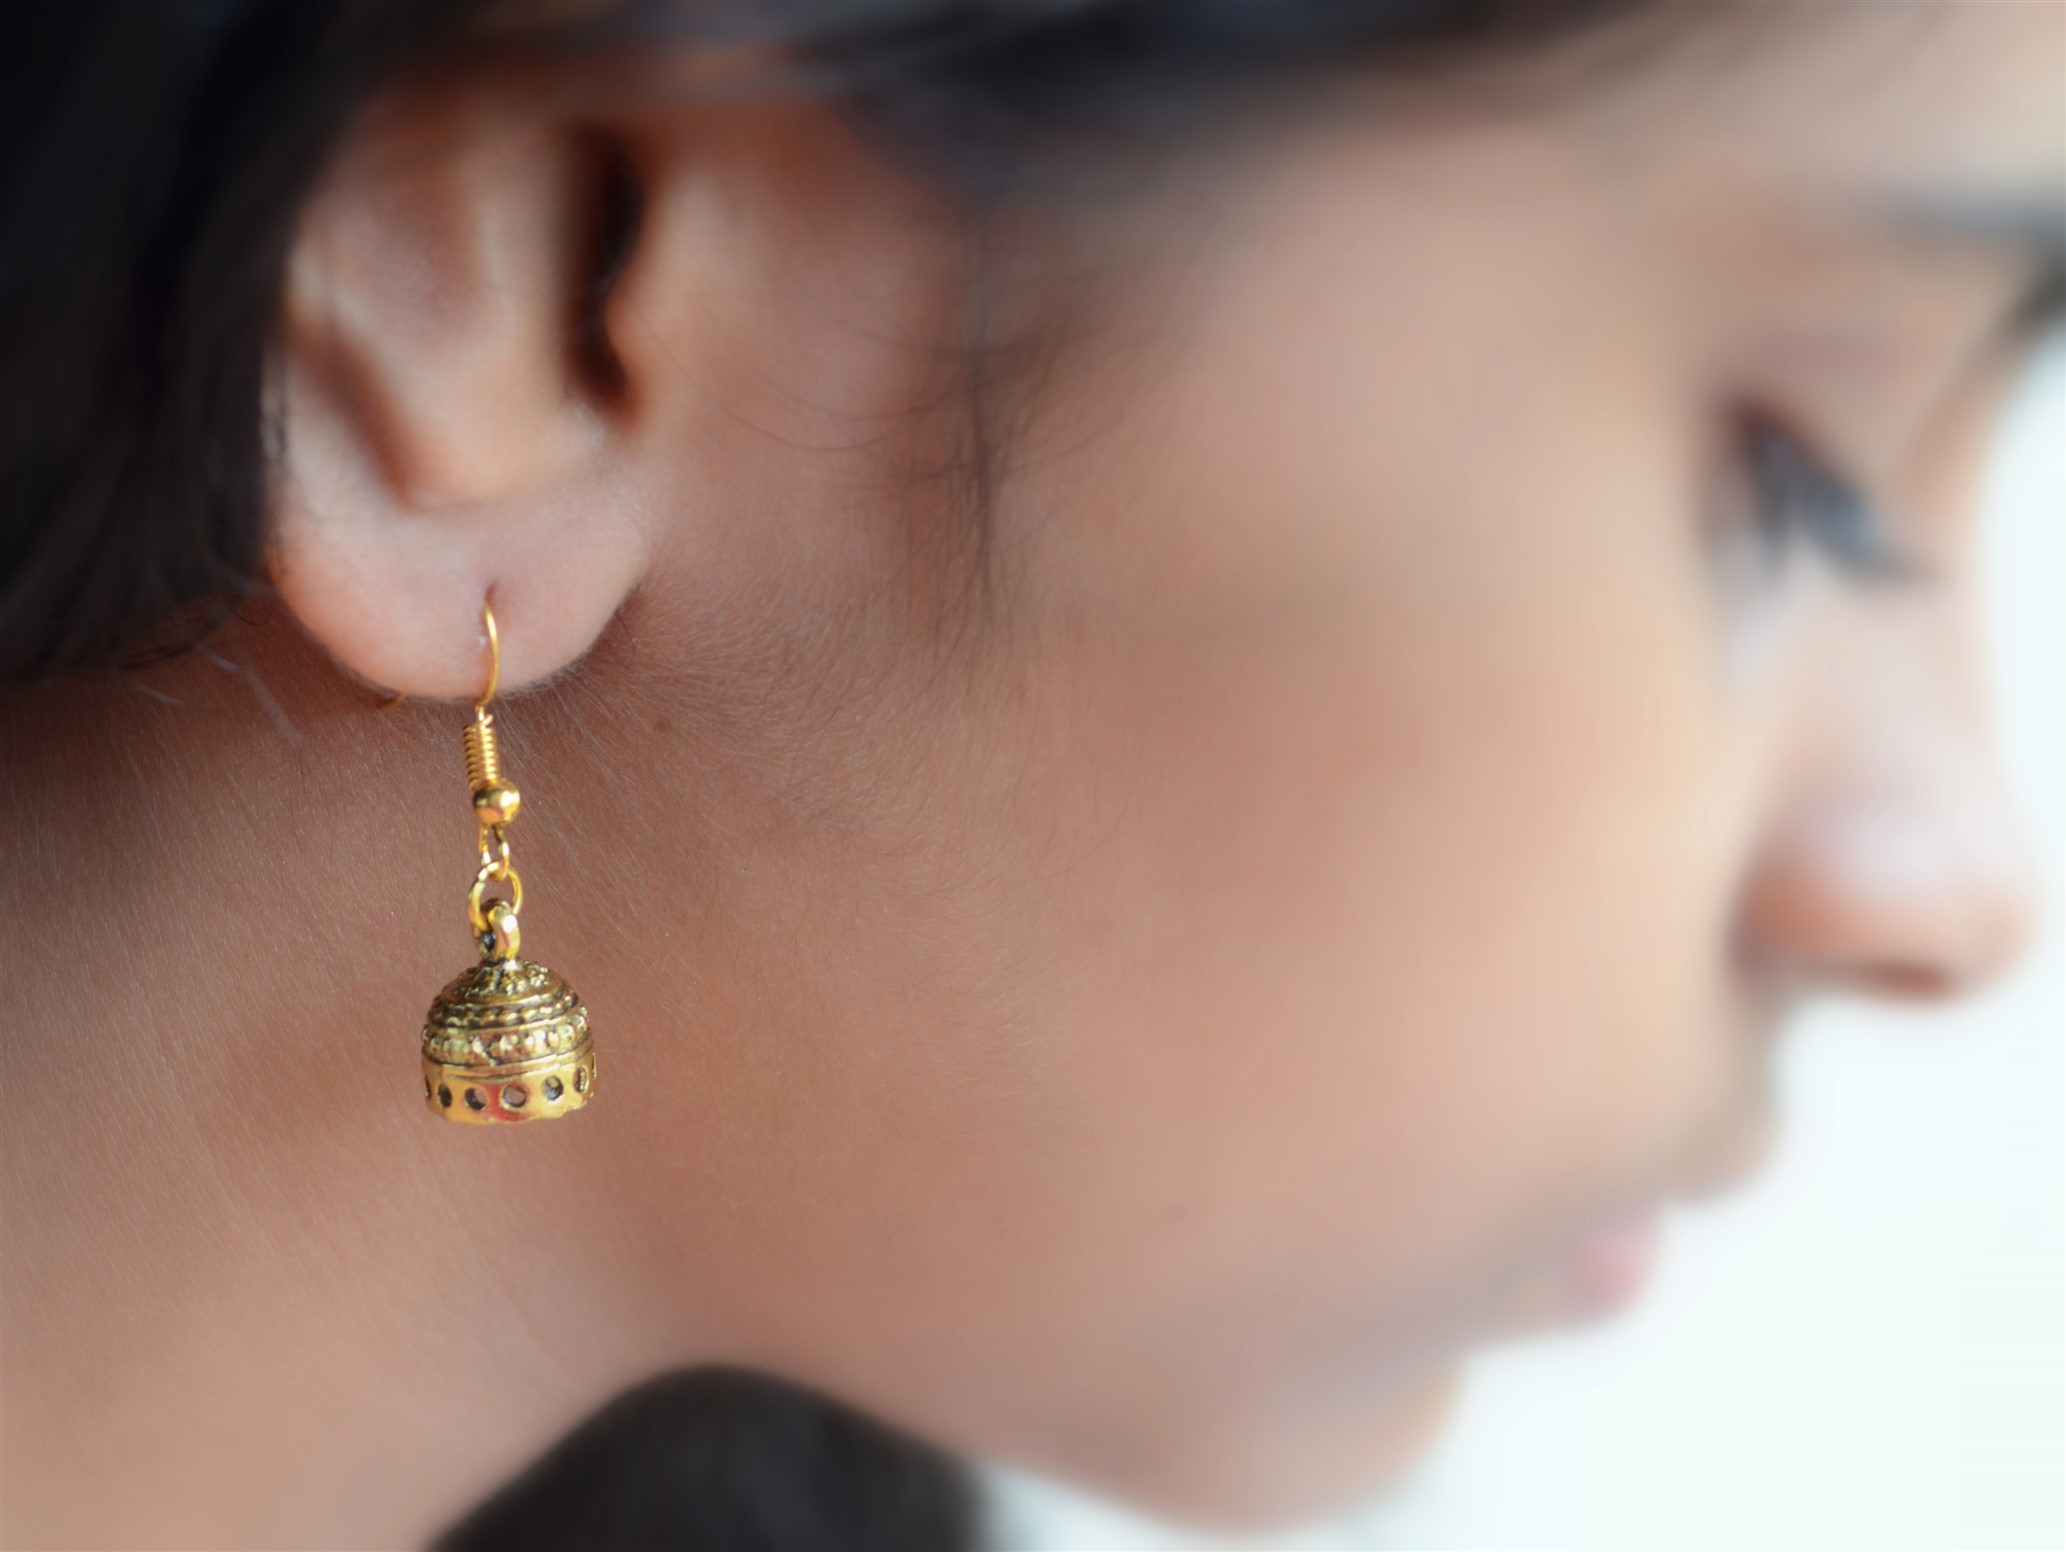 Buy Elegant White Stone Gold Earring Design One Gram Gold Bali Earrings for  School Girls